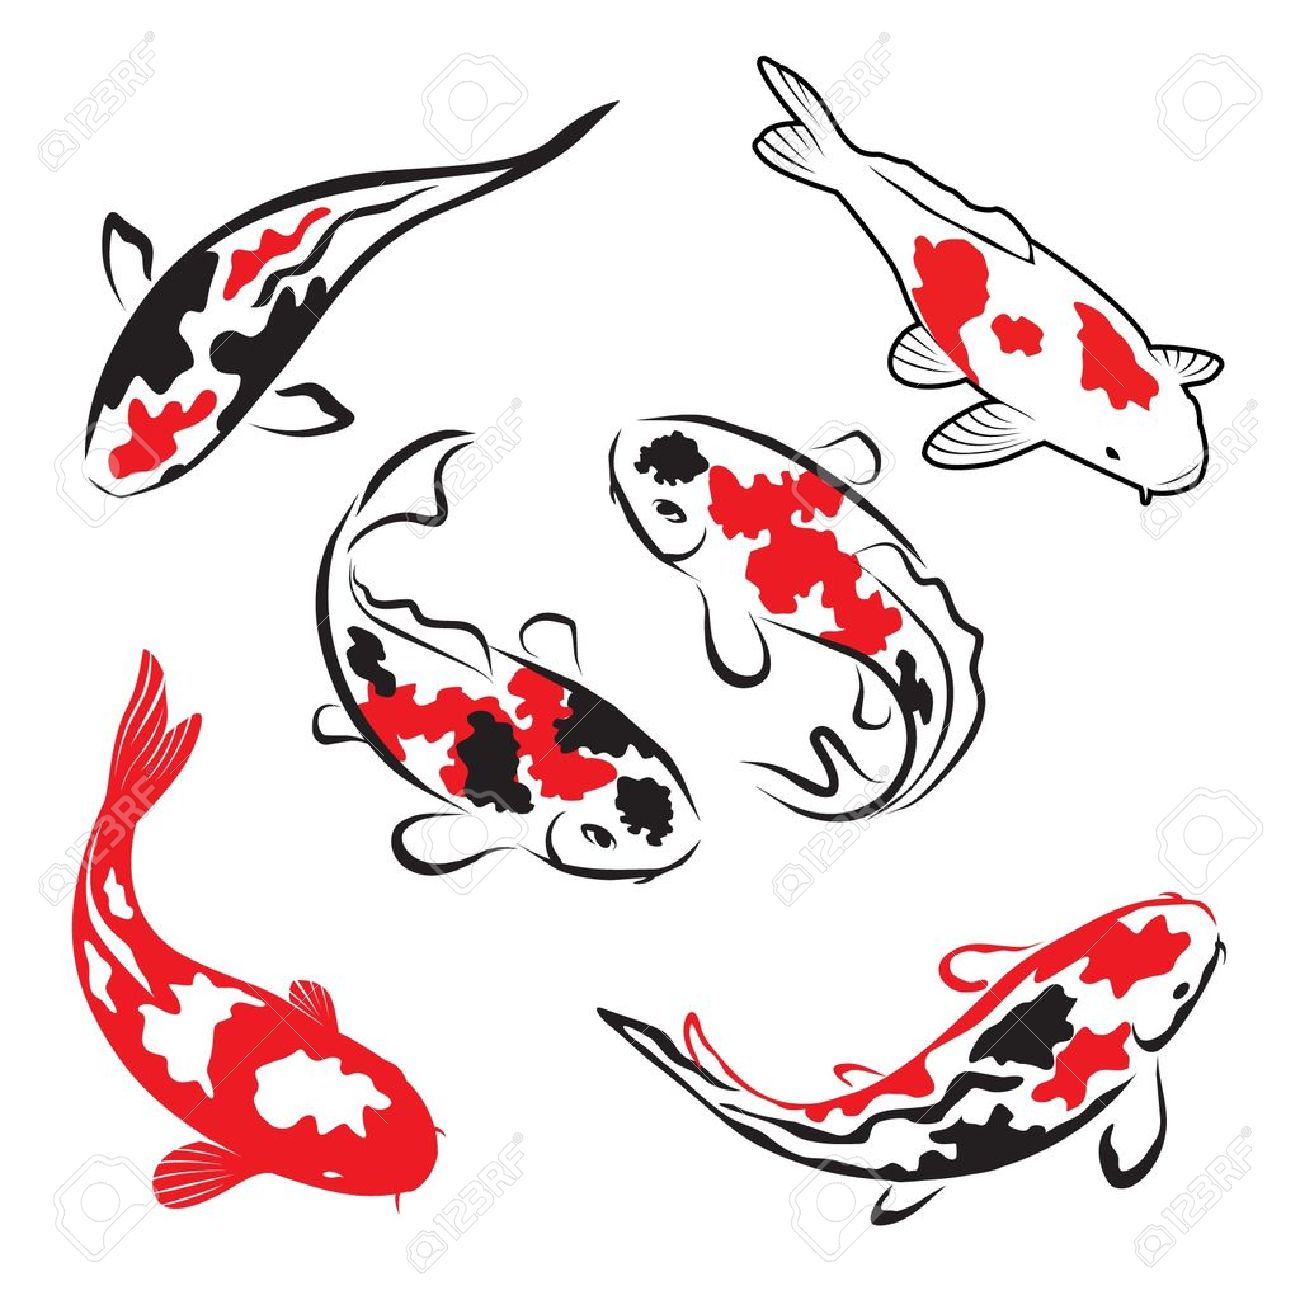 Koi fish clip art - ClipartFe - Koi Fish Clipart